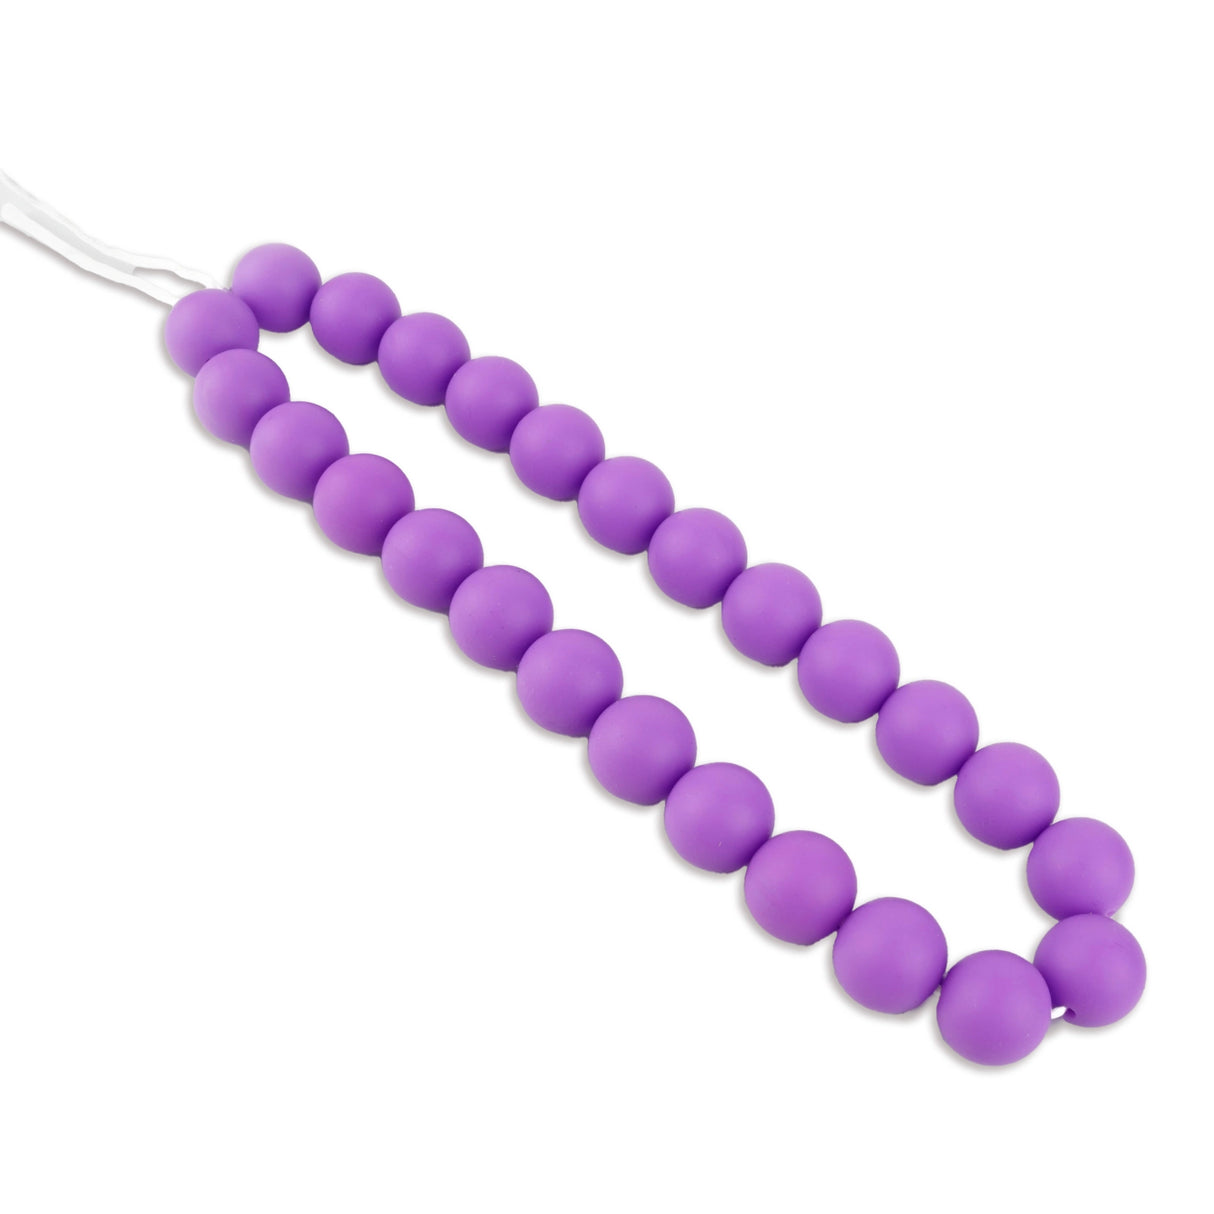 Silicone Bead Round - Medium Purple